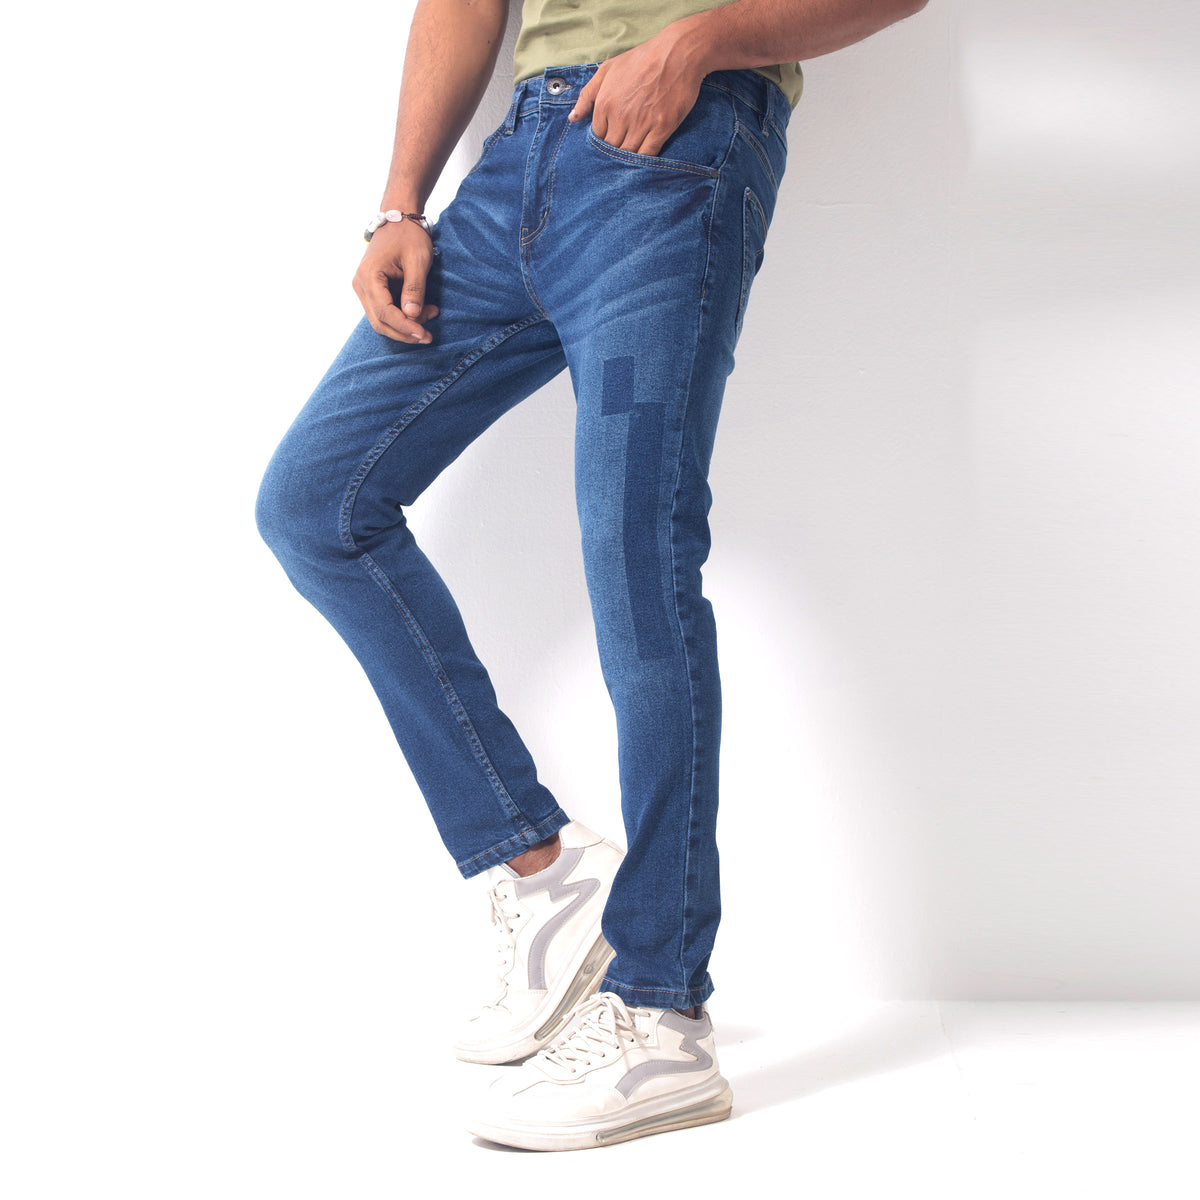 Stretchable Vintage Jeans Pant - Avalanche Blue